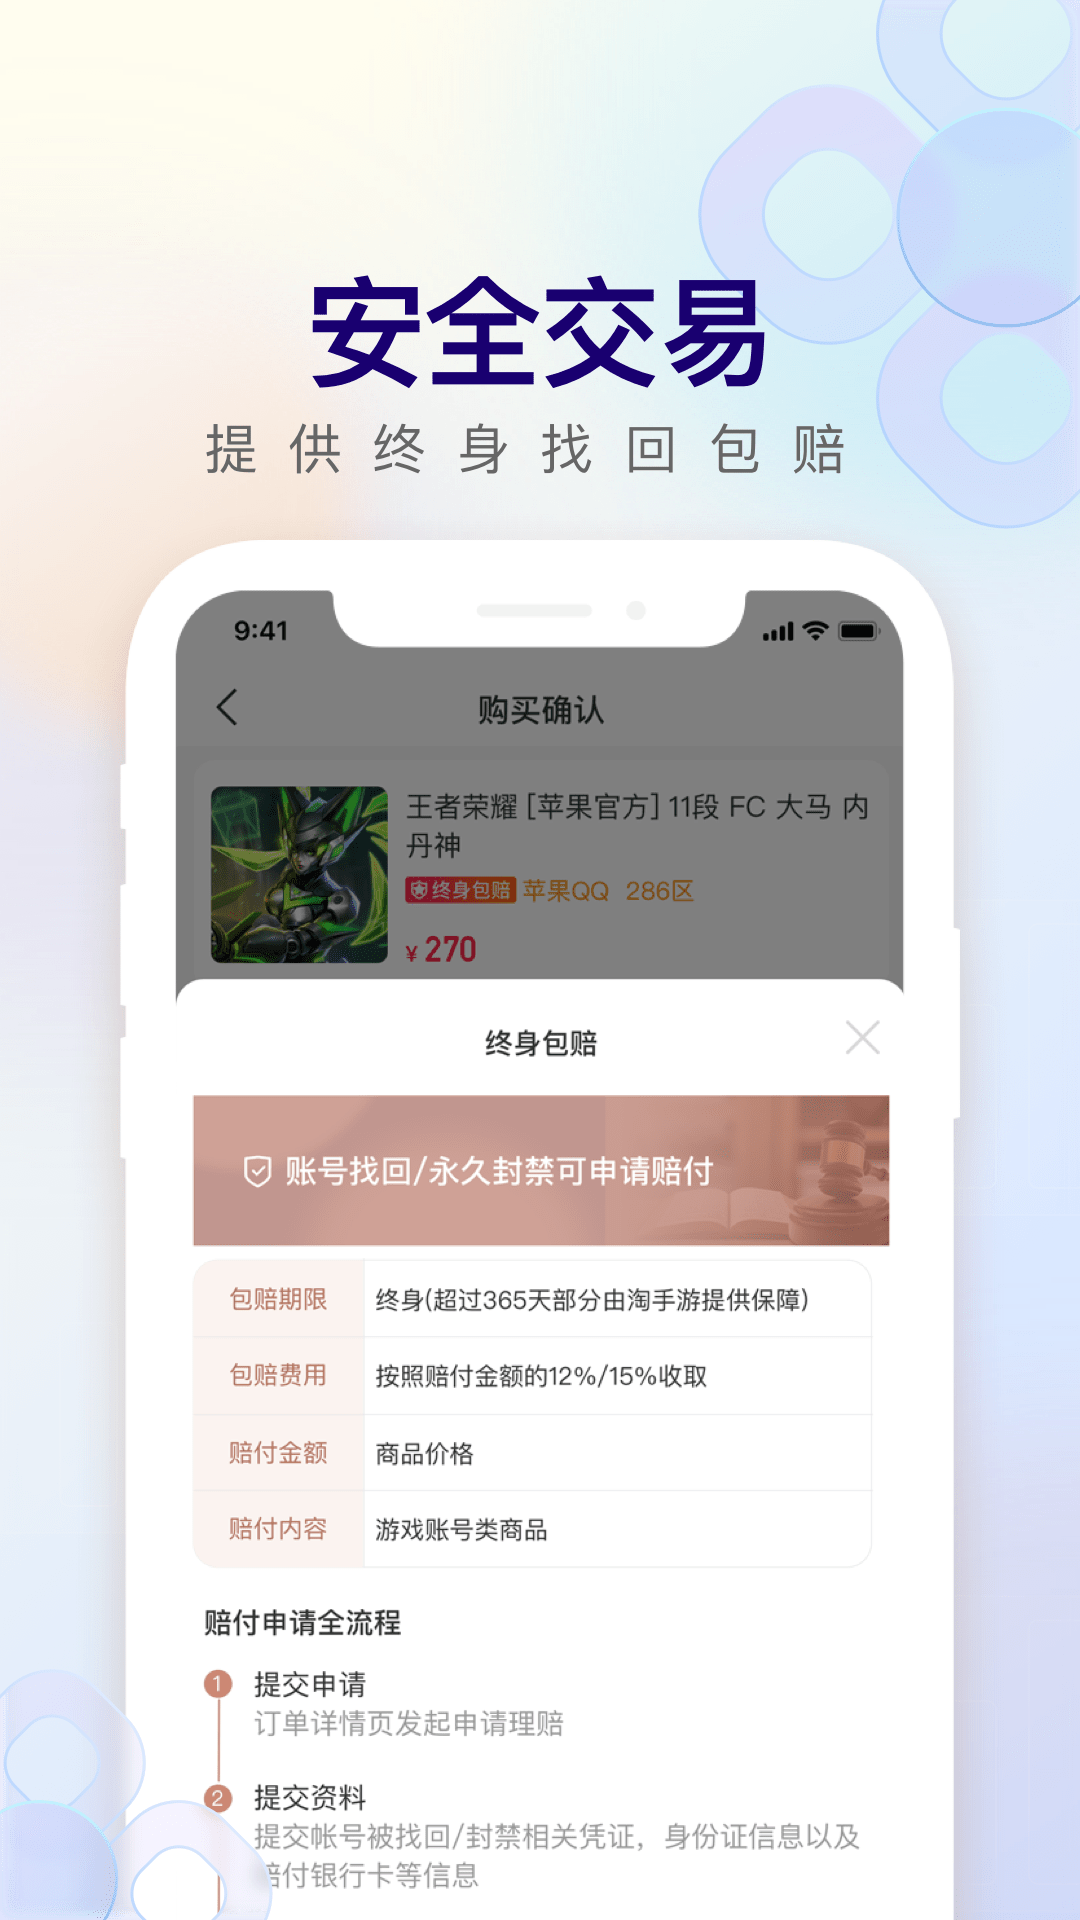 淘手游极速版app下载,淘手游极速版app官方下载 v1.0.0